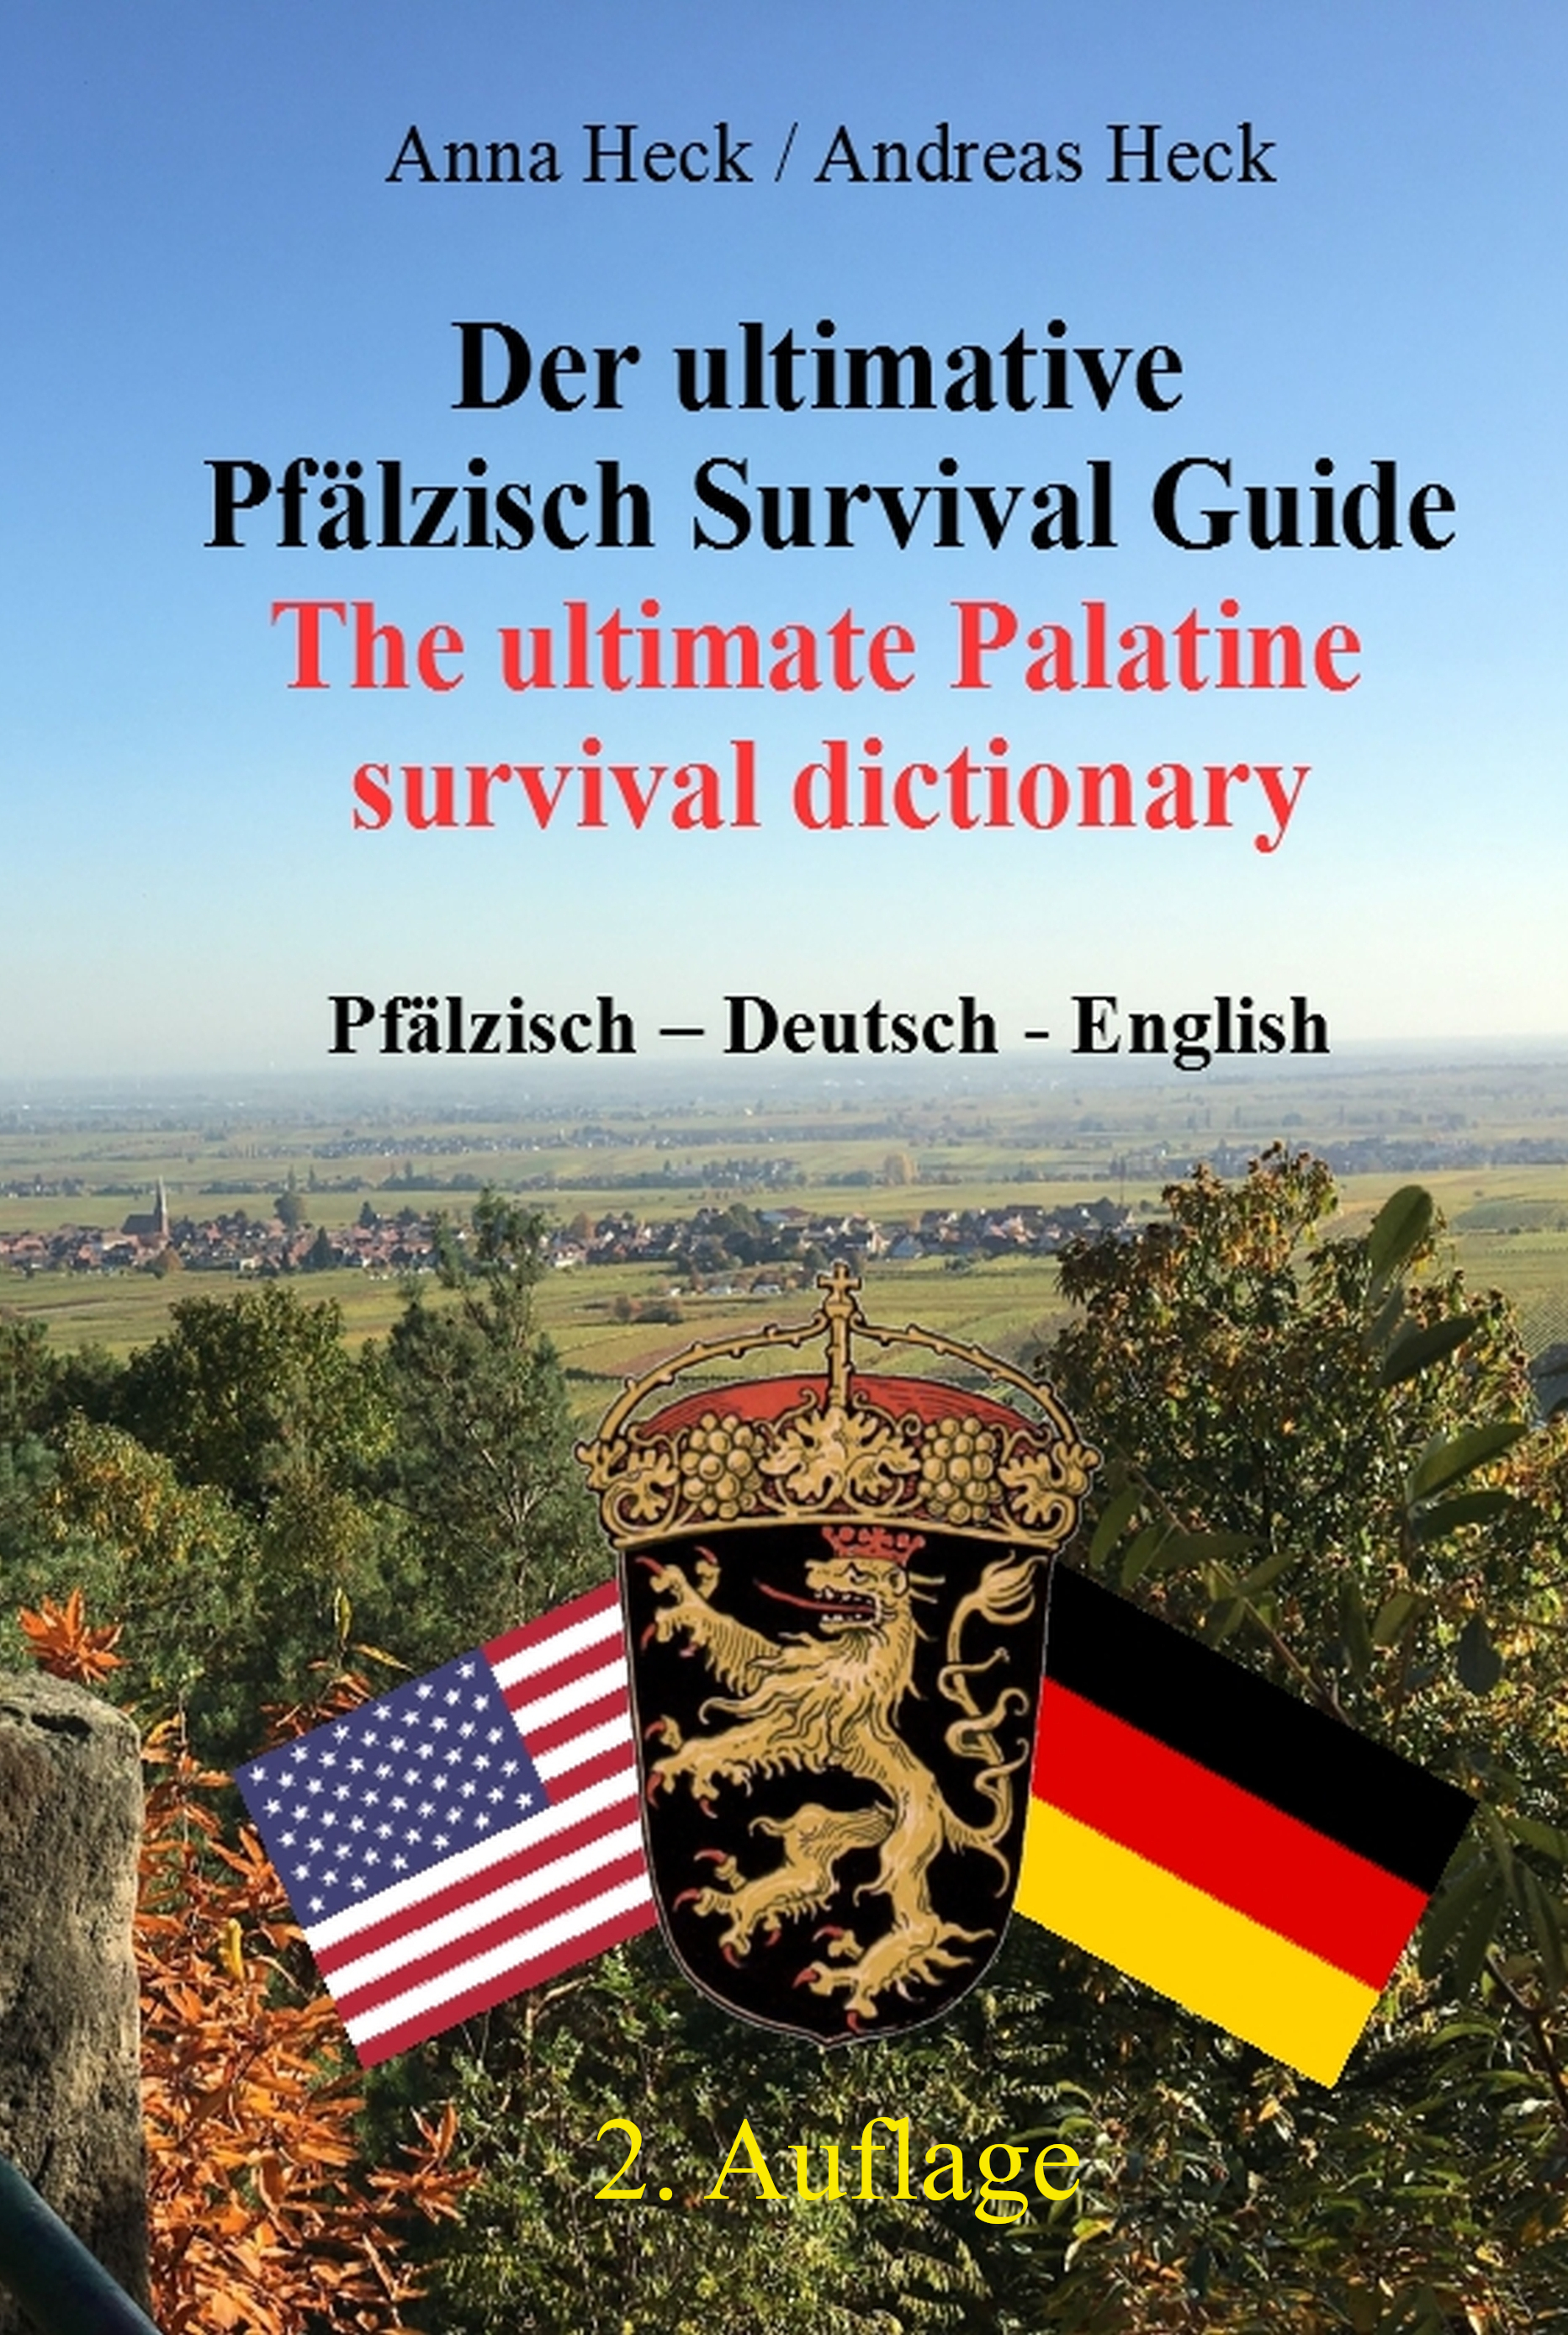 Cover des Palatine Survival Guides